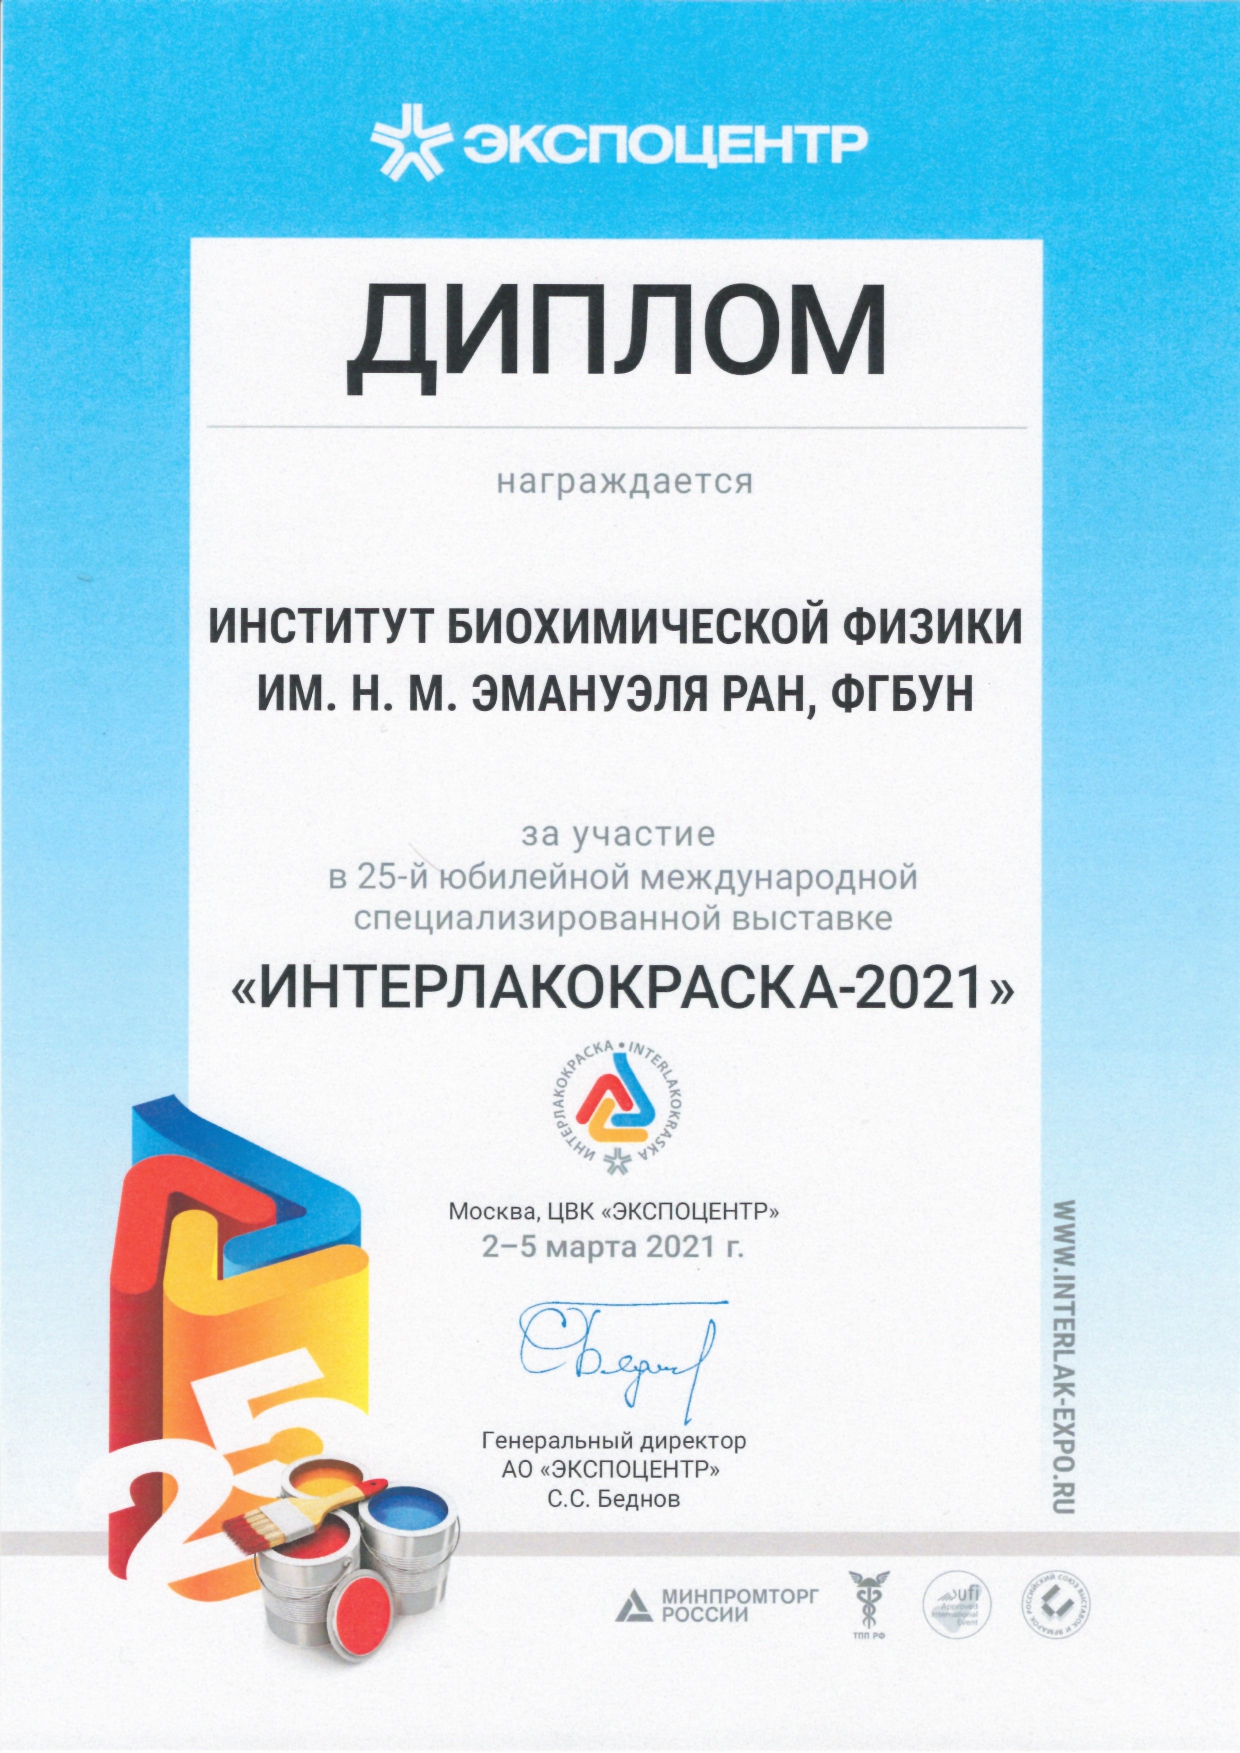 Участие ИБХФ РАН в выставке «ИНТЕРЛАКОКРАСКА – 2021», 3-5 марта 2021 года